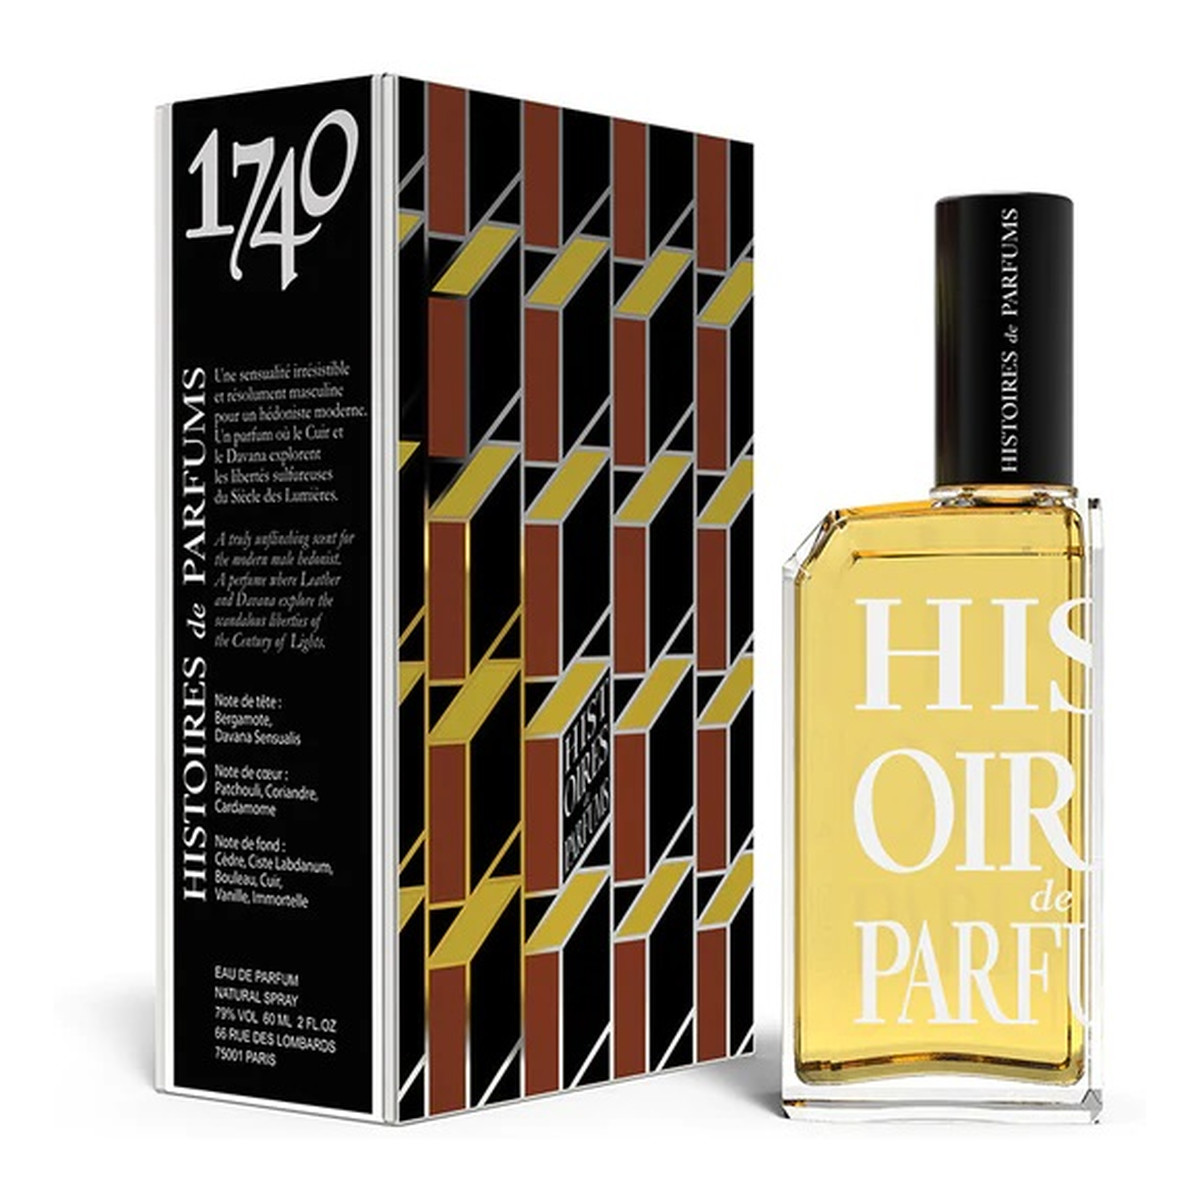 Histoires De Parfums 1740 Marquis de Sade Woda perfumowana spray 60ml